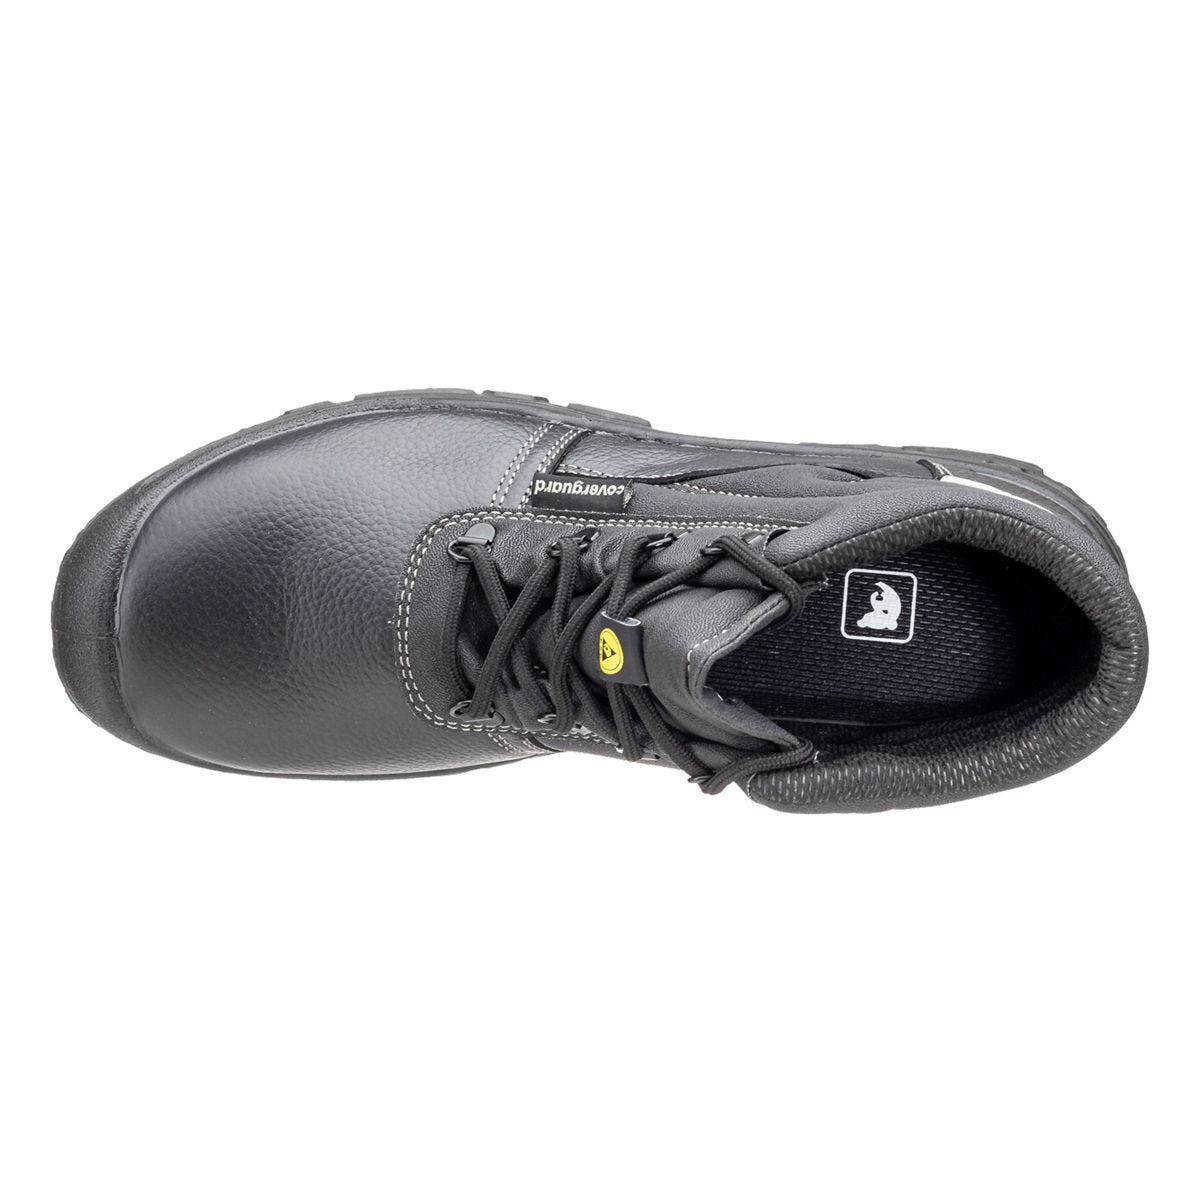 Chaussures de sécurité hautes Azurite II S3 ESD noir - Coverguard - Taille 36 3